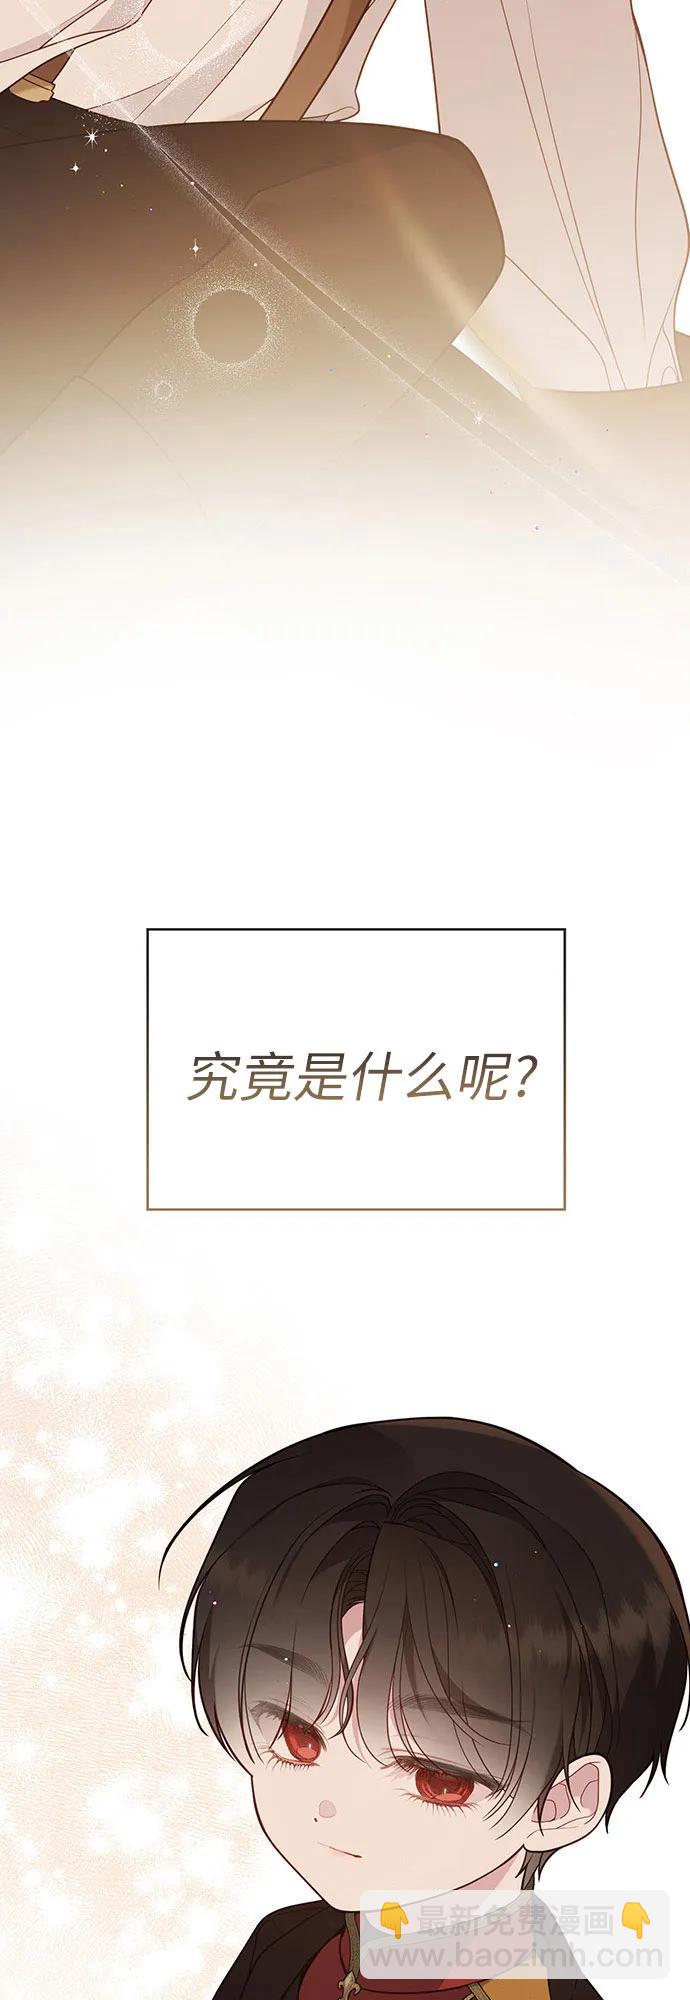 寶貝暴君 - 【免費】第一季後記 - 6